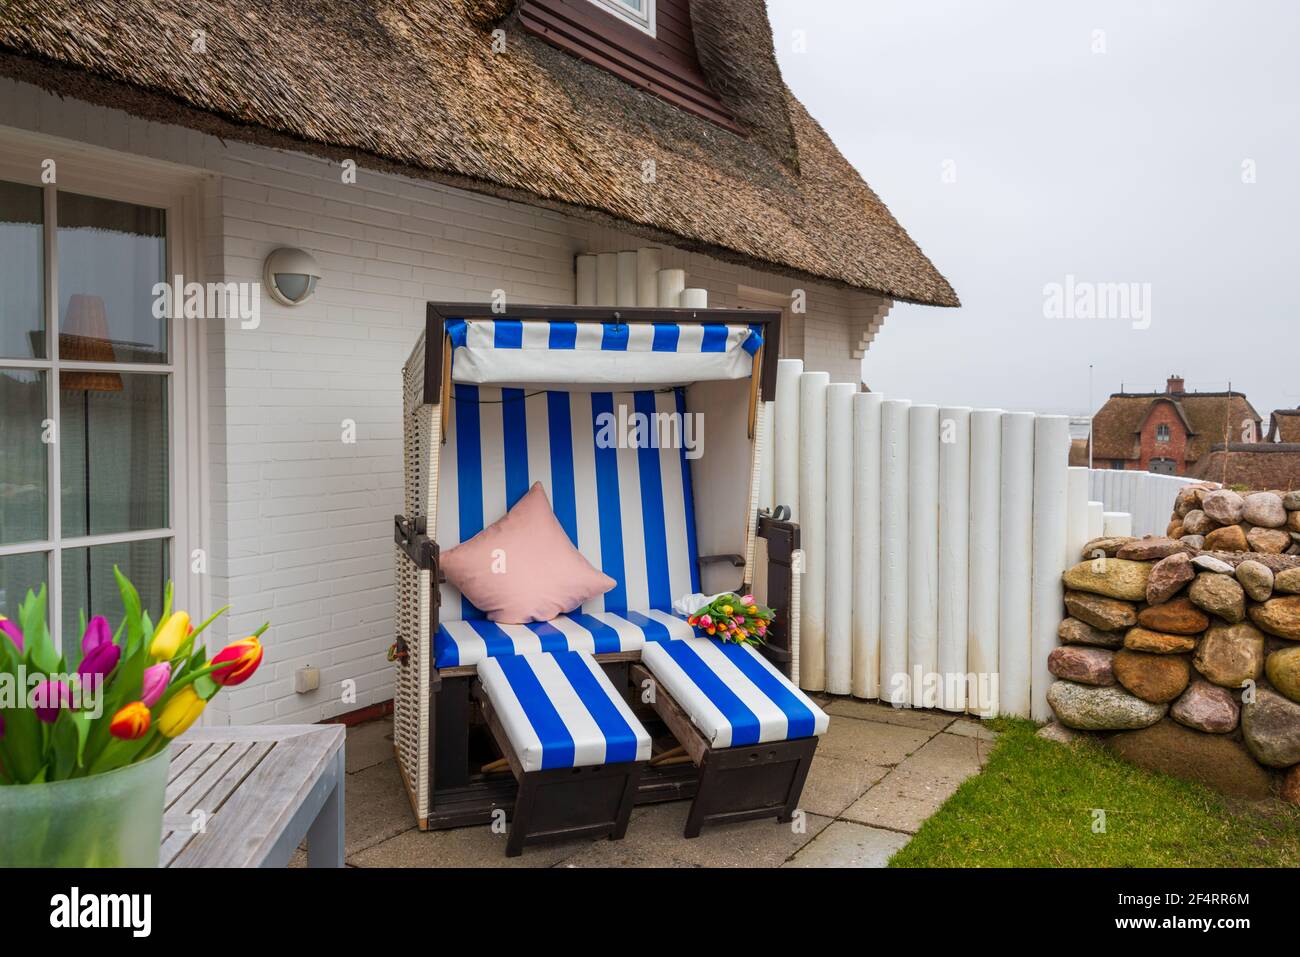 Strandkorb auf der Terrasse einer Ferienwohnung auf der Nordseeinsel Sylt Foto de stock